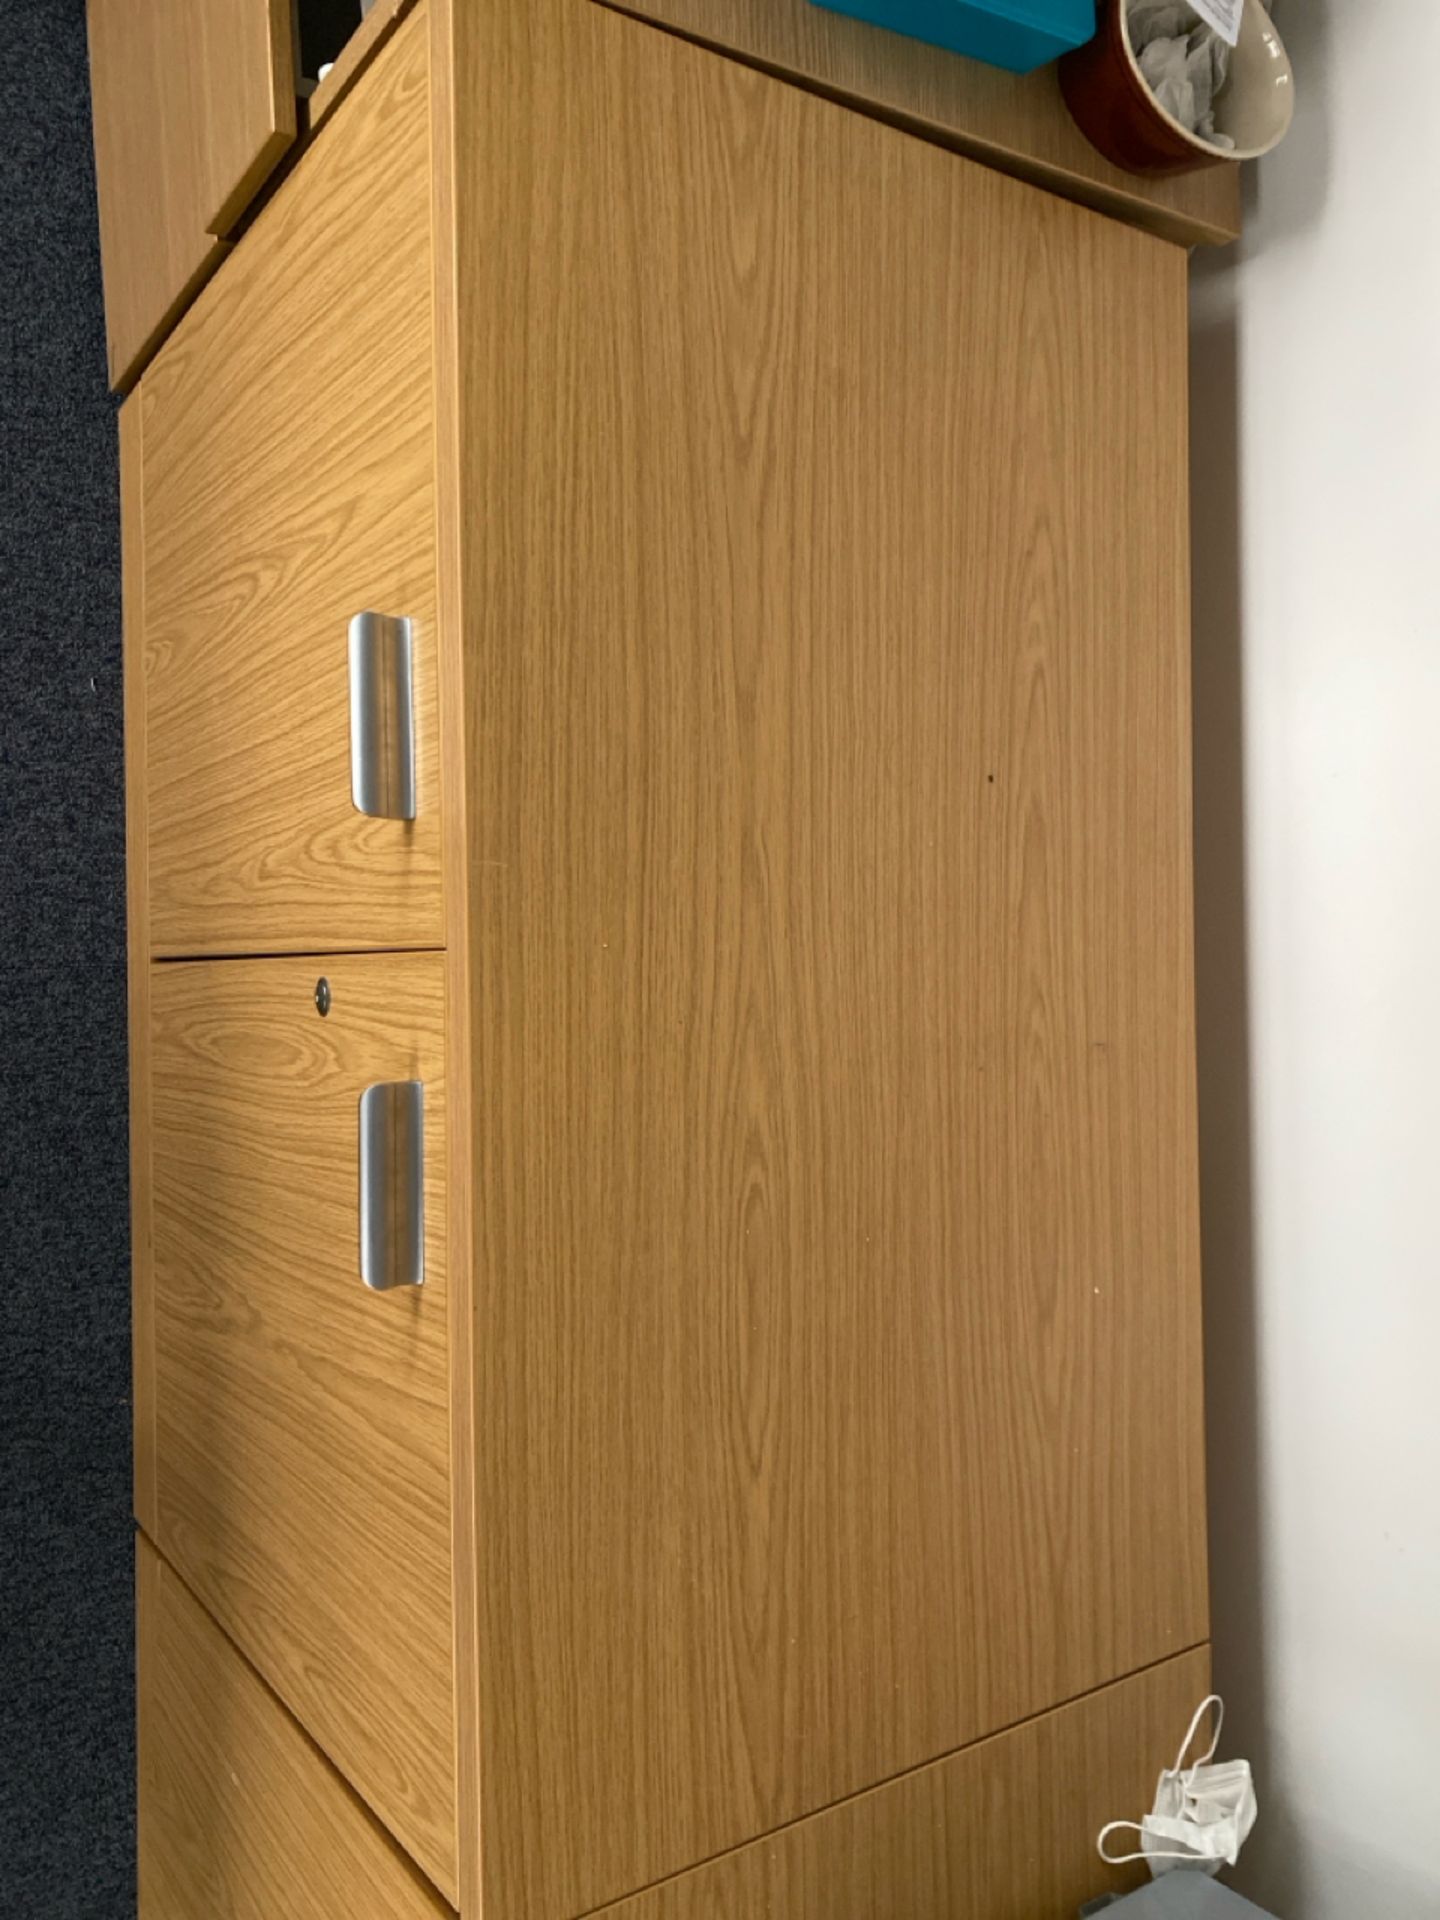 2 Door Wooden Storage Cabinet - Image 4 of 4